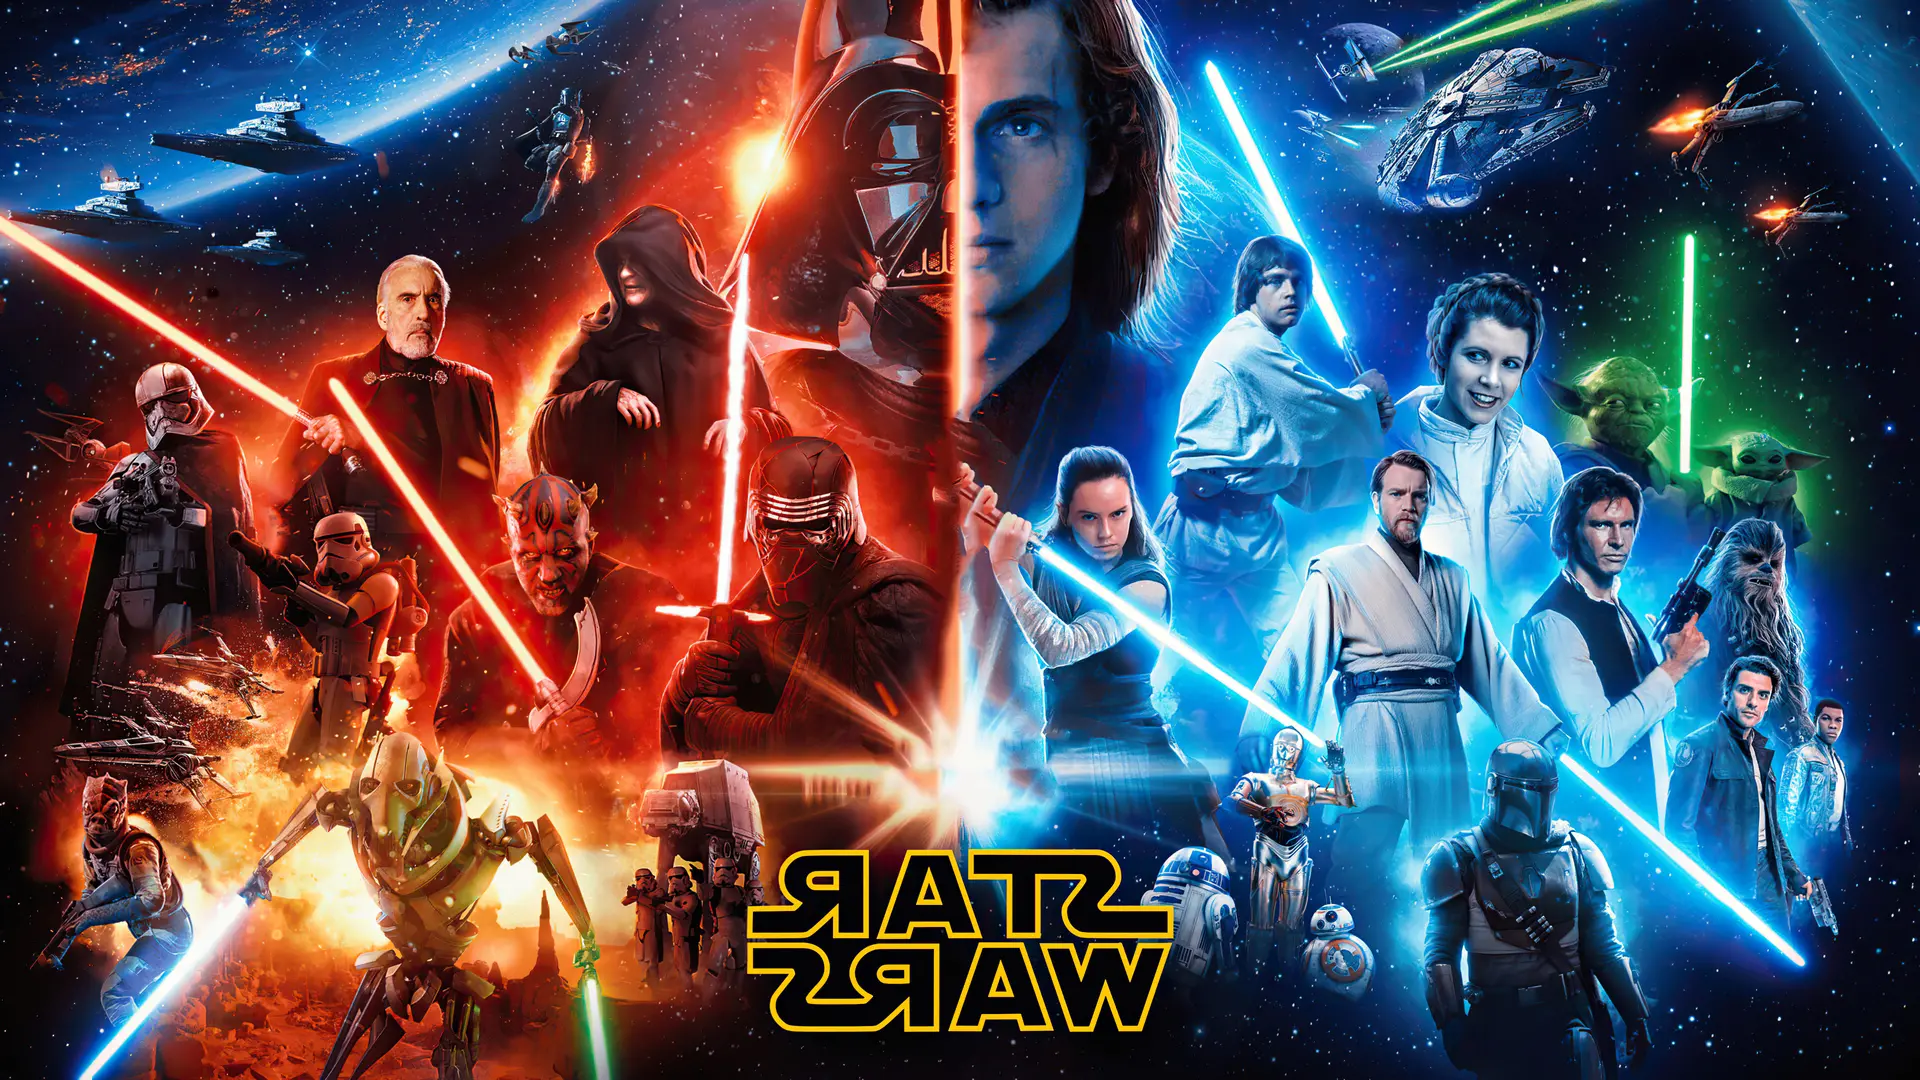 Saya menemukan poster Star Wars yang sangat keren ini secara online dan menjadikannya sebagai wallpaper desktop saya. Aku menyukainya! : r/StarWars